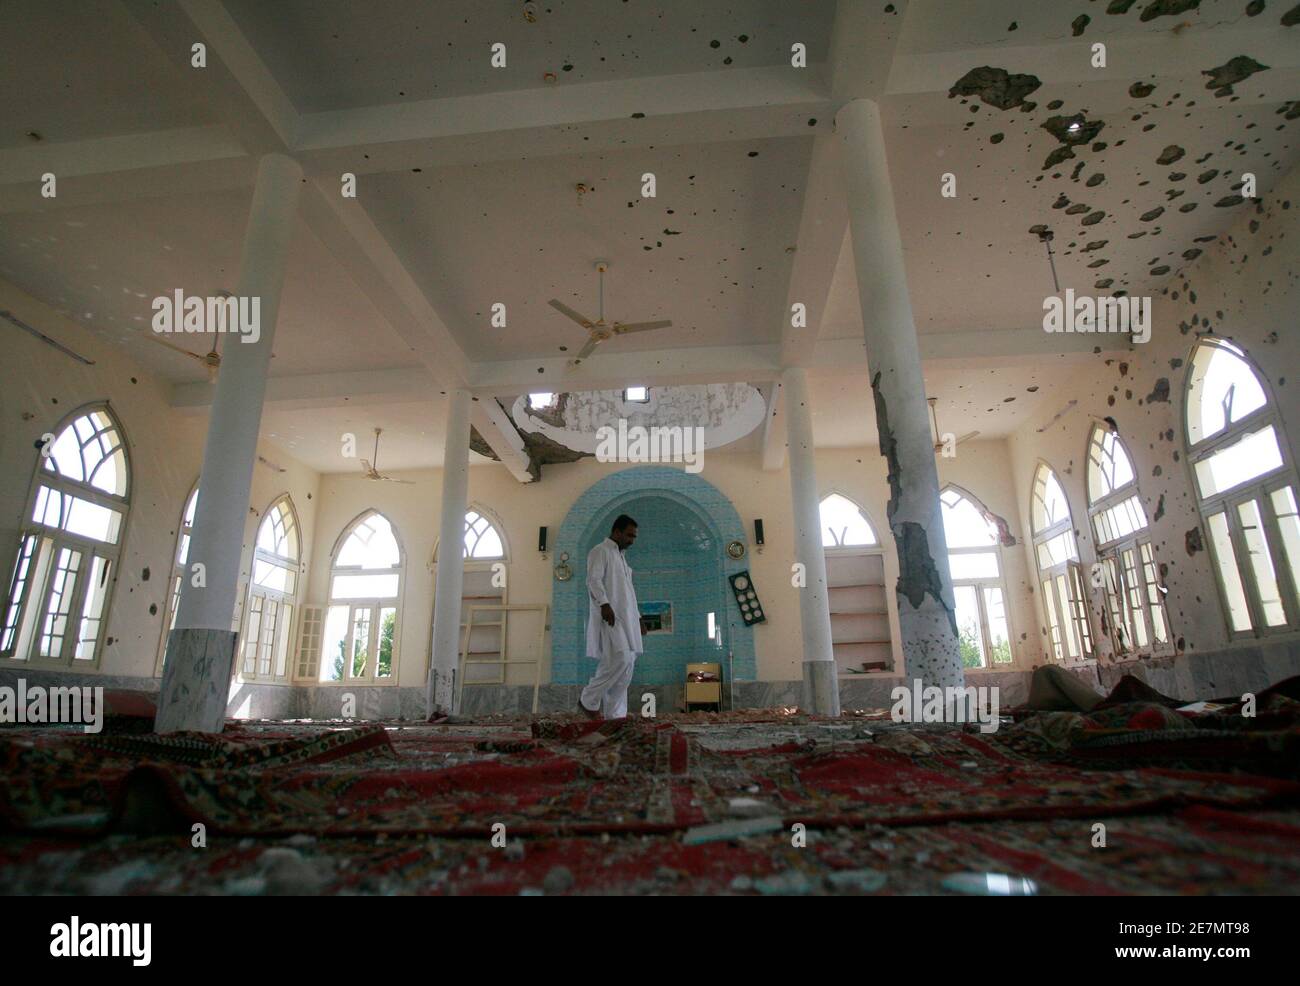 Ein Mann geht durch einen beschädigten Moschee während einer temporären Leichtigkeit in Ausgangssperre in Buner Bezirk, etwa 190 km (118 Meilen) nordwestlich von der pakistanischen Hauptstadt Islamabad, 28. Mai 2009. Zwei Bomben explodierten in einem Markt in der nordwestlichen pakistanischen Peshawar am Donnerstag, sechs Menschen getötet und bewaffneten auf Dächern überfallen Polizei, da sie am Tatort eintraf.   REUTERS/Faisal Mahmood (PAKISTAN-Politik-Konflikt) Stockfoto